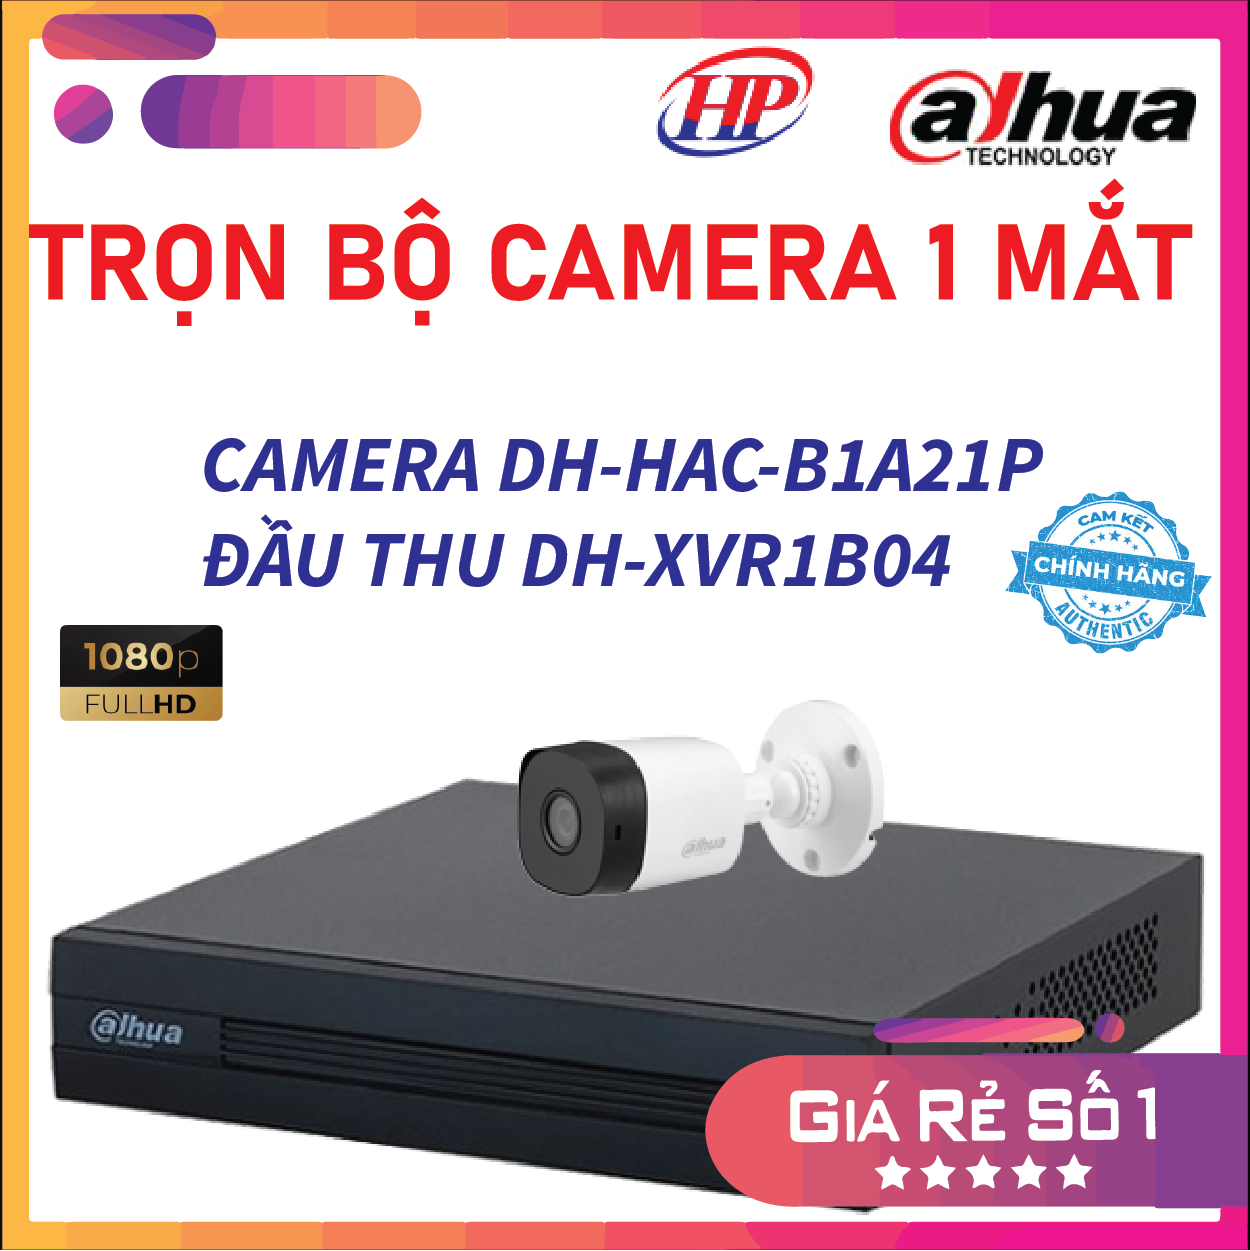 Trọn bộ 1 camera DH-HAC-B1A21P Đầu thu 4 cổng XVR1B04 đầy đủ phụ kiện, Hàng chính hãng